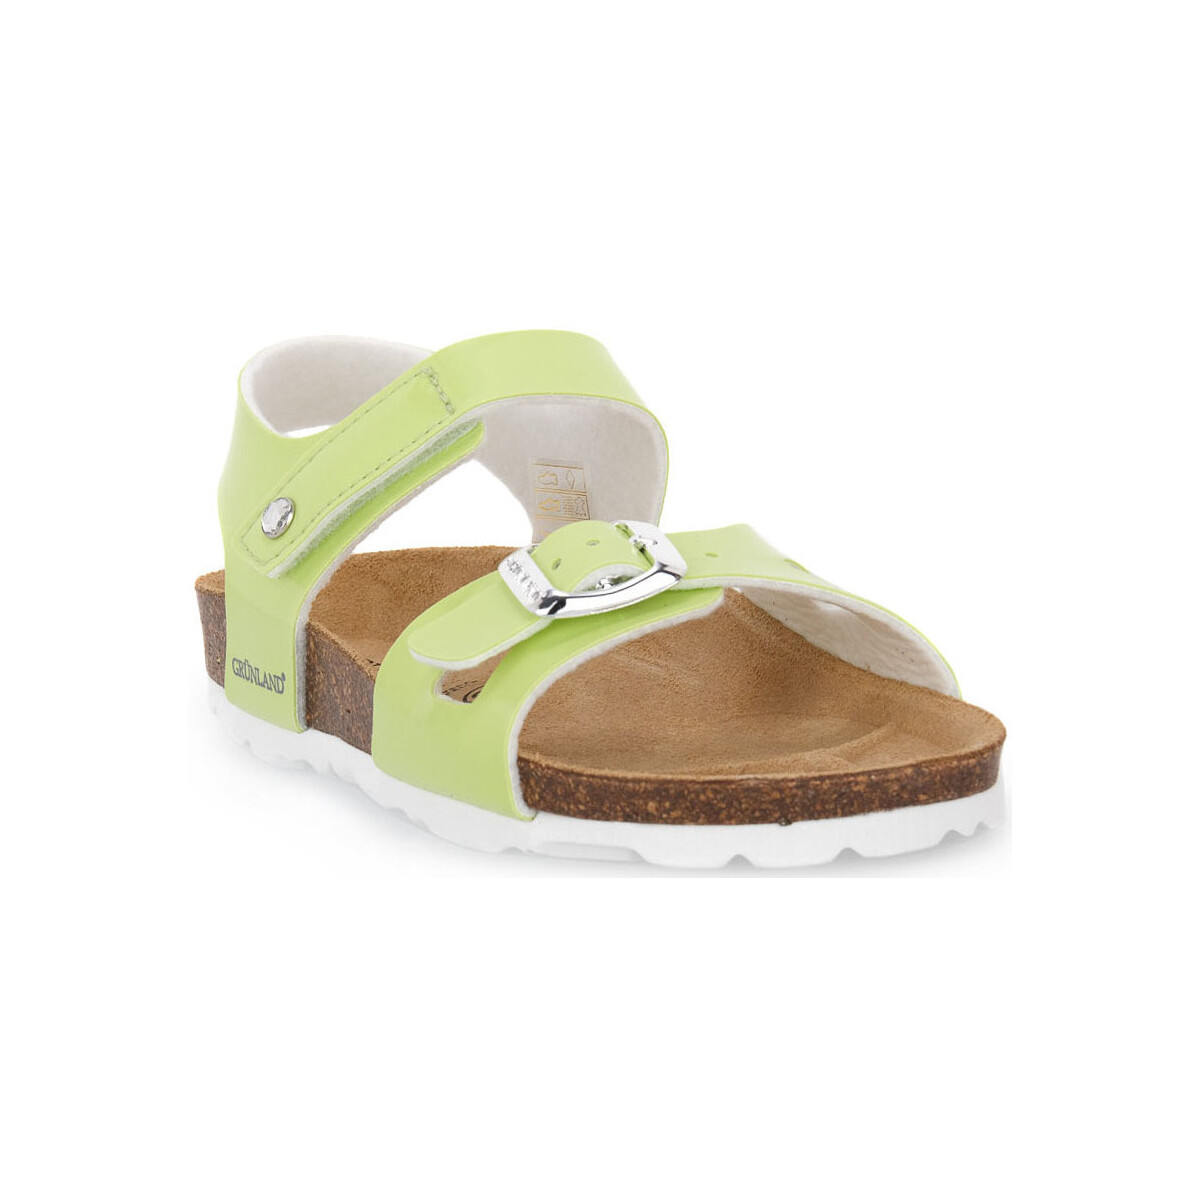 Παπούτσια Κορίτσι Σανδάλια / Πέδιλα Grunland MELA 40LUCE Green